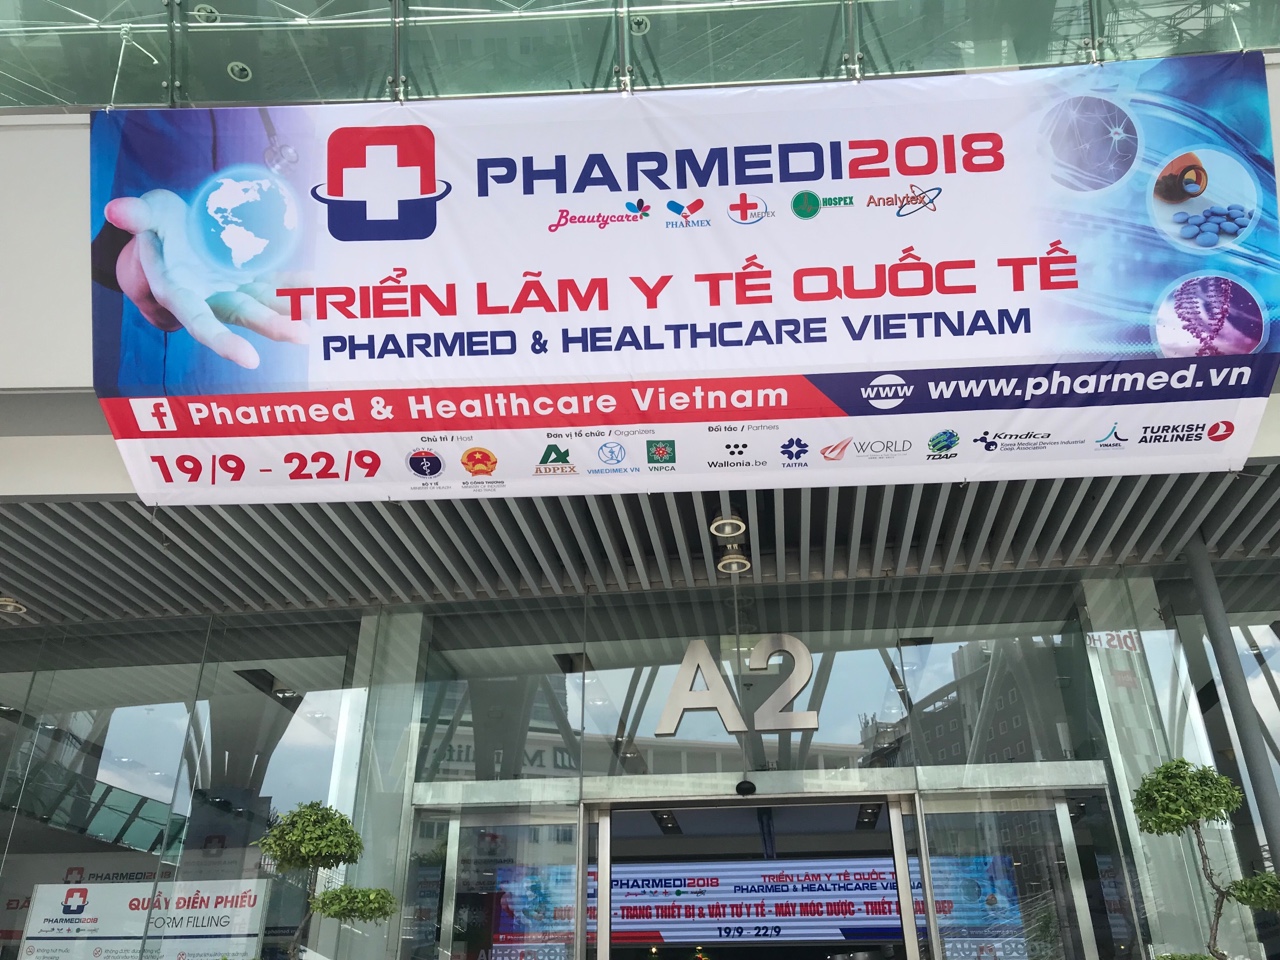 Triển lãm Y tế Quốc tế Việt Nam lần thứ 13 – PHARMED & HEALTHCARE VIETNAM 2018 - Hội Doanh nghiệp Dược